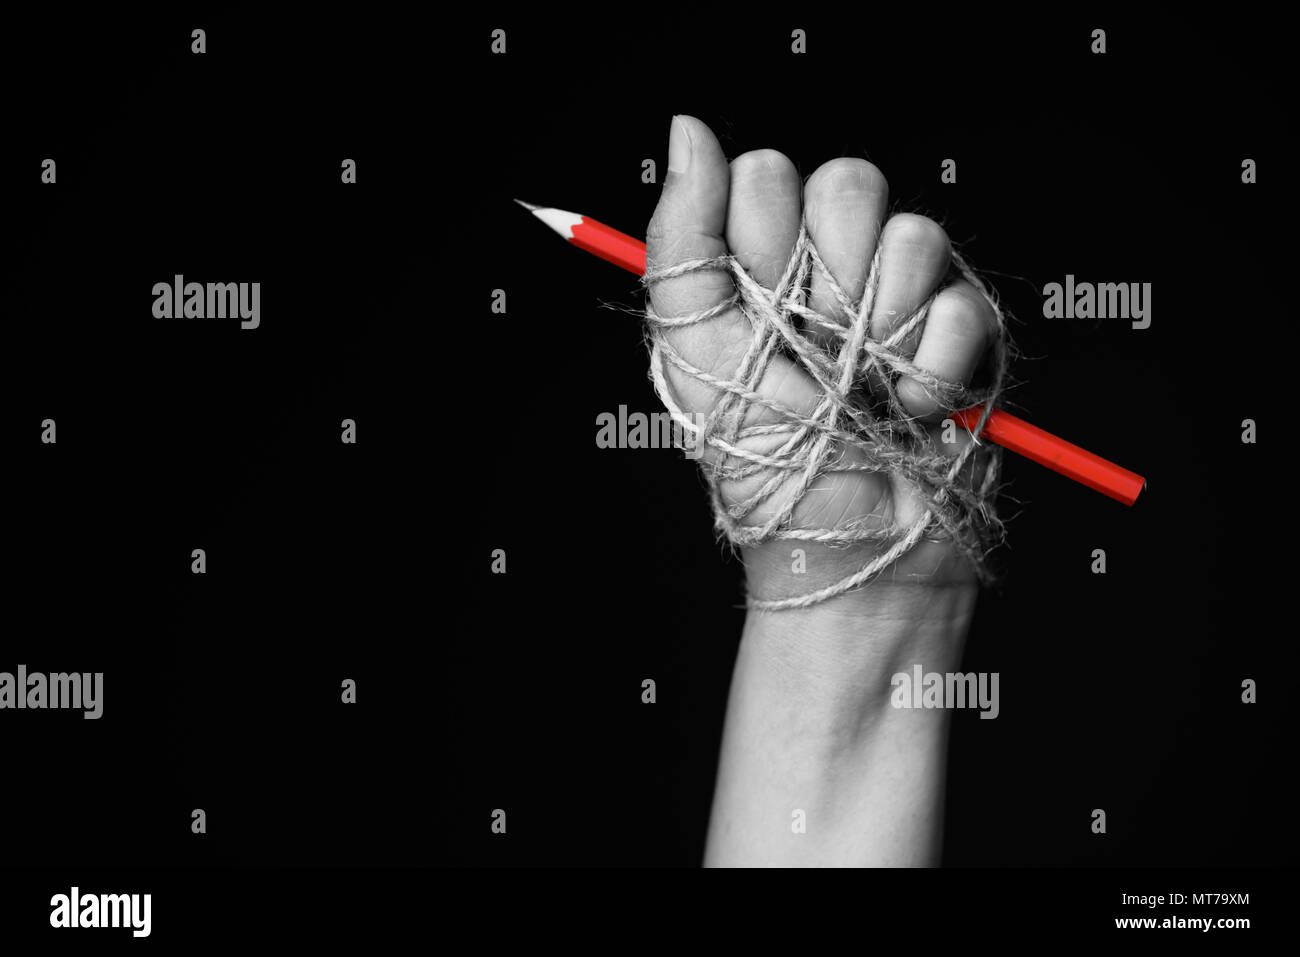 La main avec crayon rouge attaché avec de la corde, illustrant l'idée de la liberté de la presse ou la liberté d'expression sur fond sombre en bas. Banque D'Images